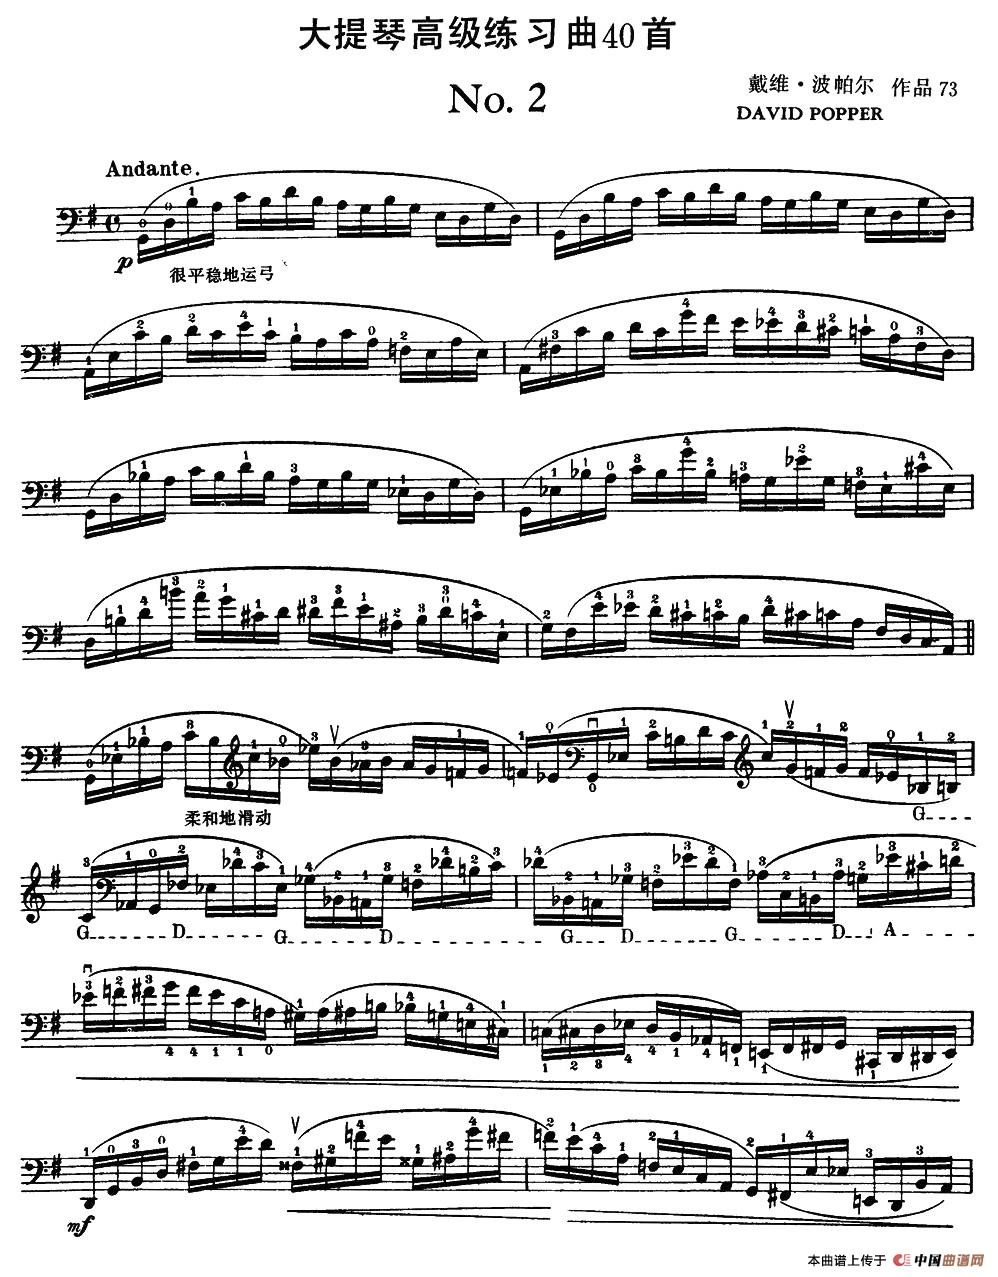 大提琴高级练习曲40首 No.2小提琴谱